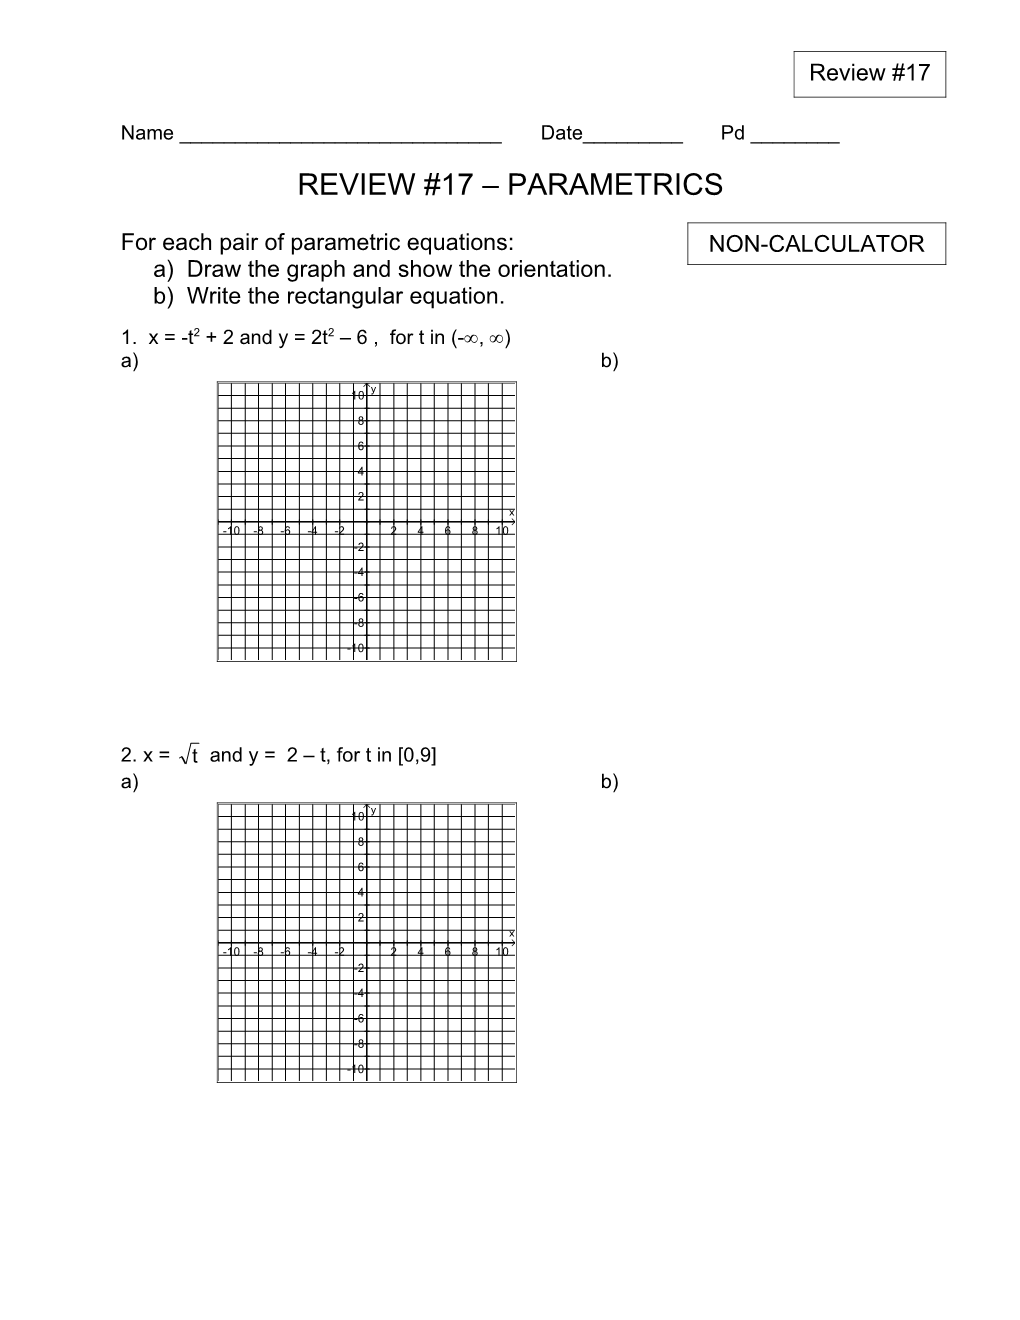 Review #17 Parametrics